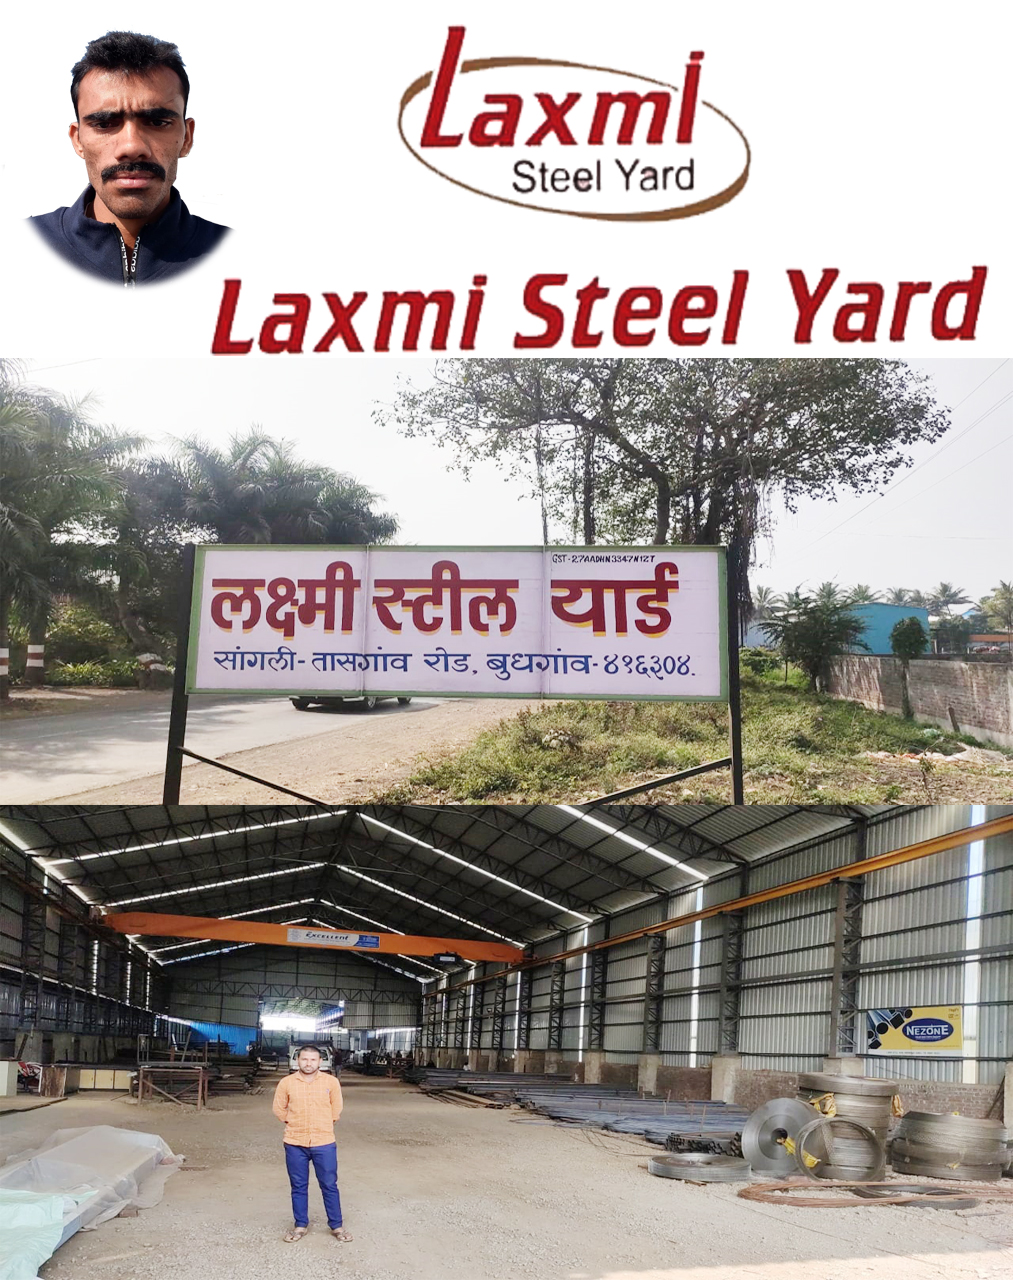 LAXMI STEEL YARD| SolapurMall.com